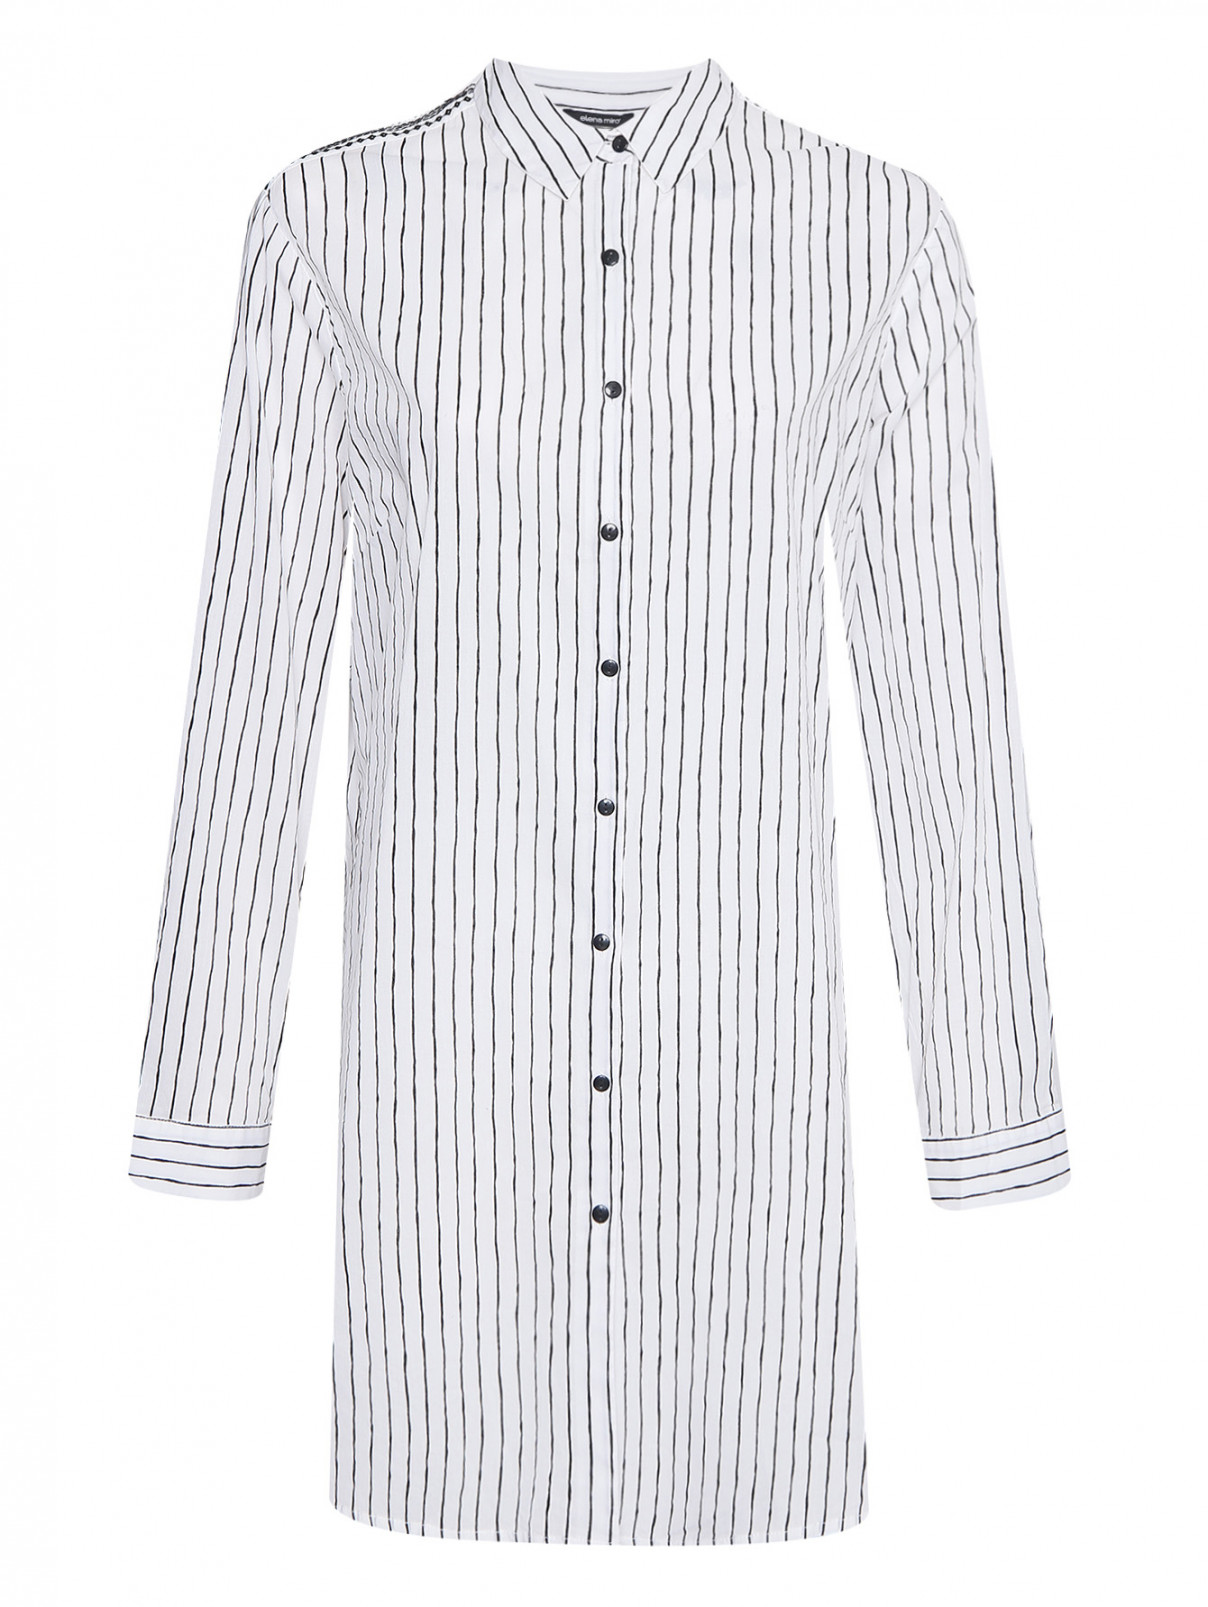 Удлиненная рубашка из хлопка с узором полоска Elena Miro  –  Общий вид  – Цвет:  Белый